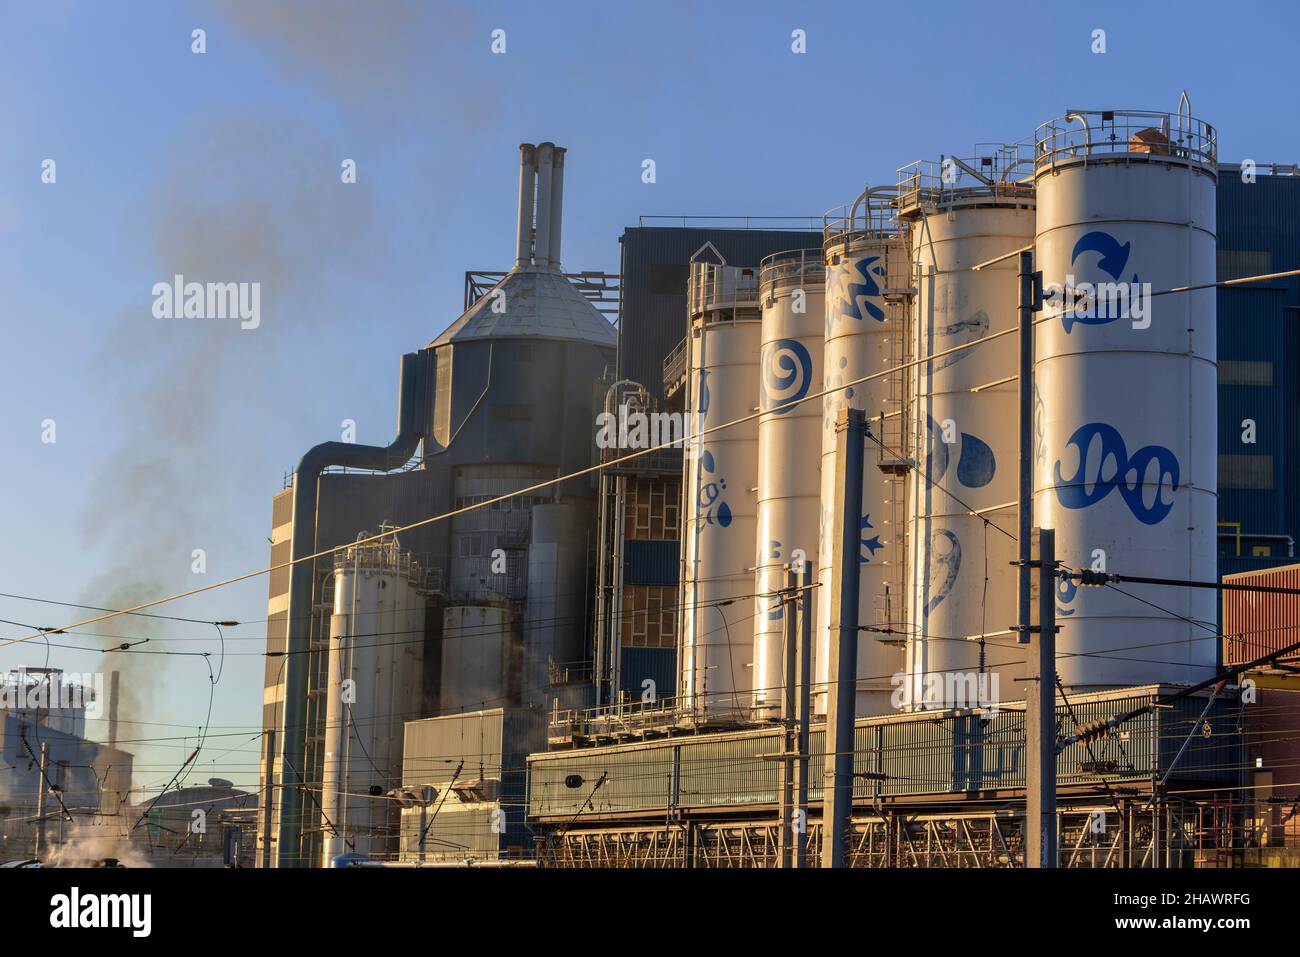 La fabbrica Unilever Faberge di Bank Quay a Warringtoon ha chiuso nell'ottobre 2020 dopo 130 anni di produzione di polvere di sapone. Foto Stock